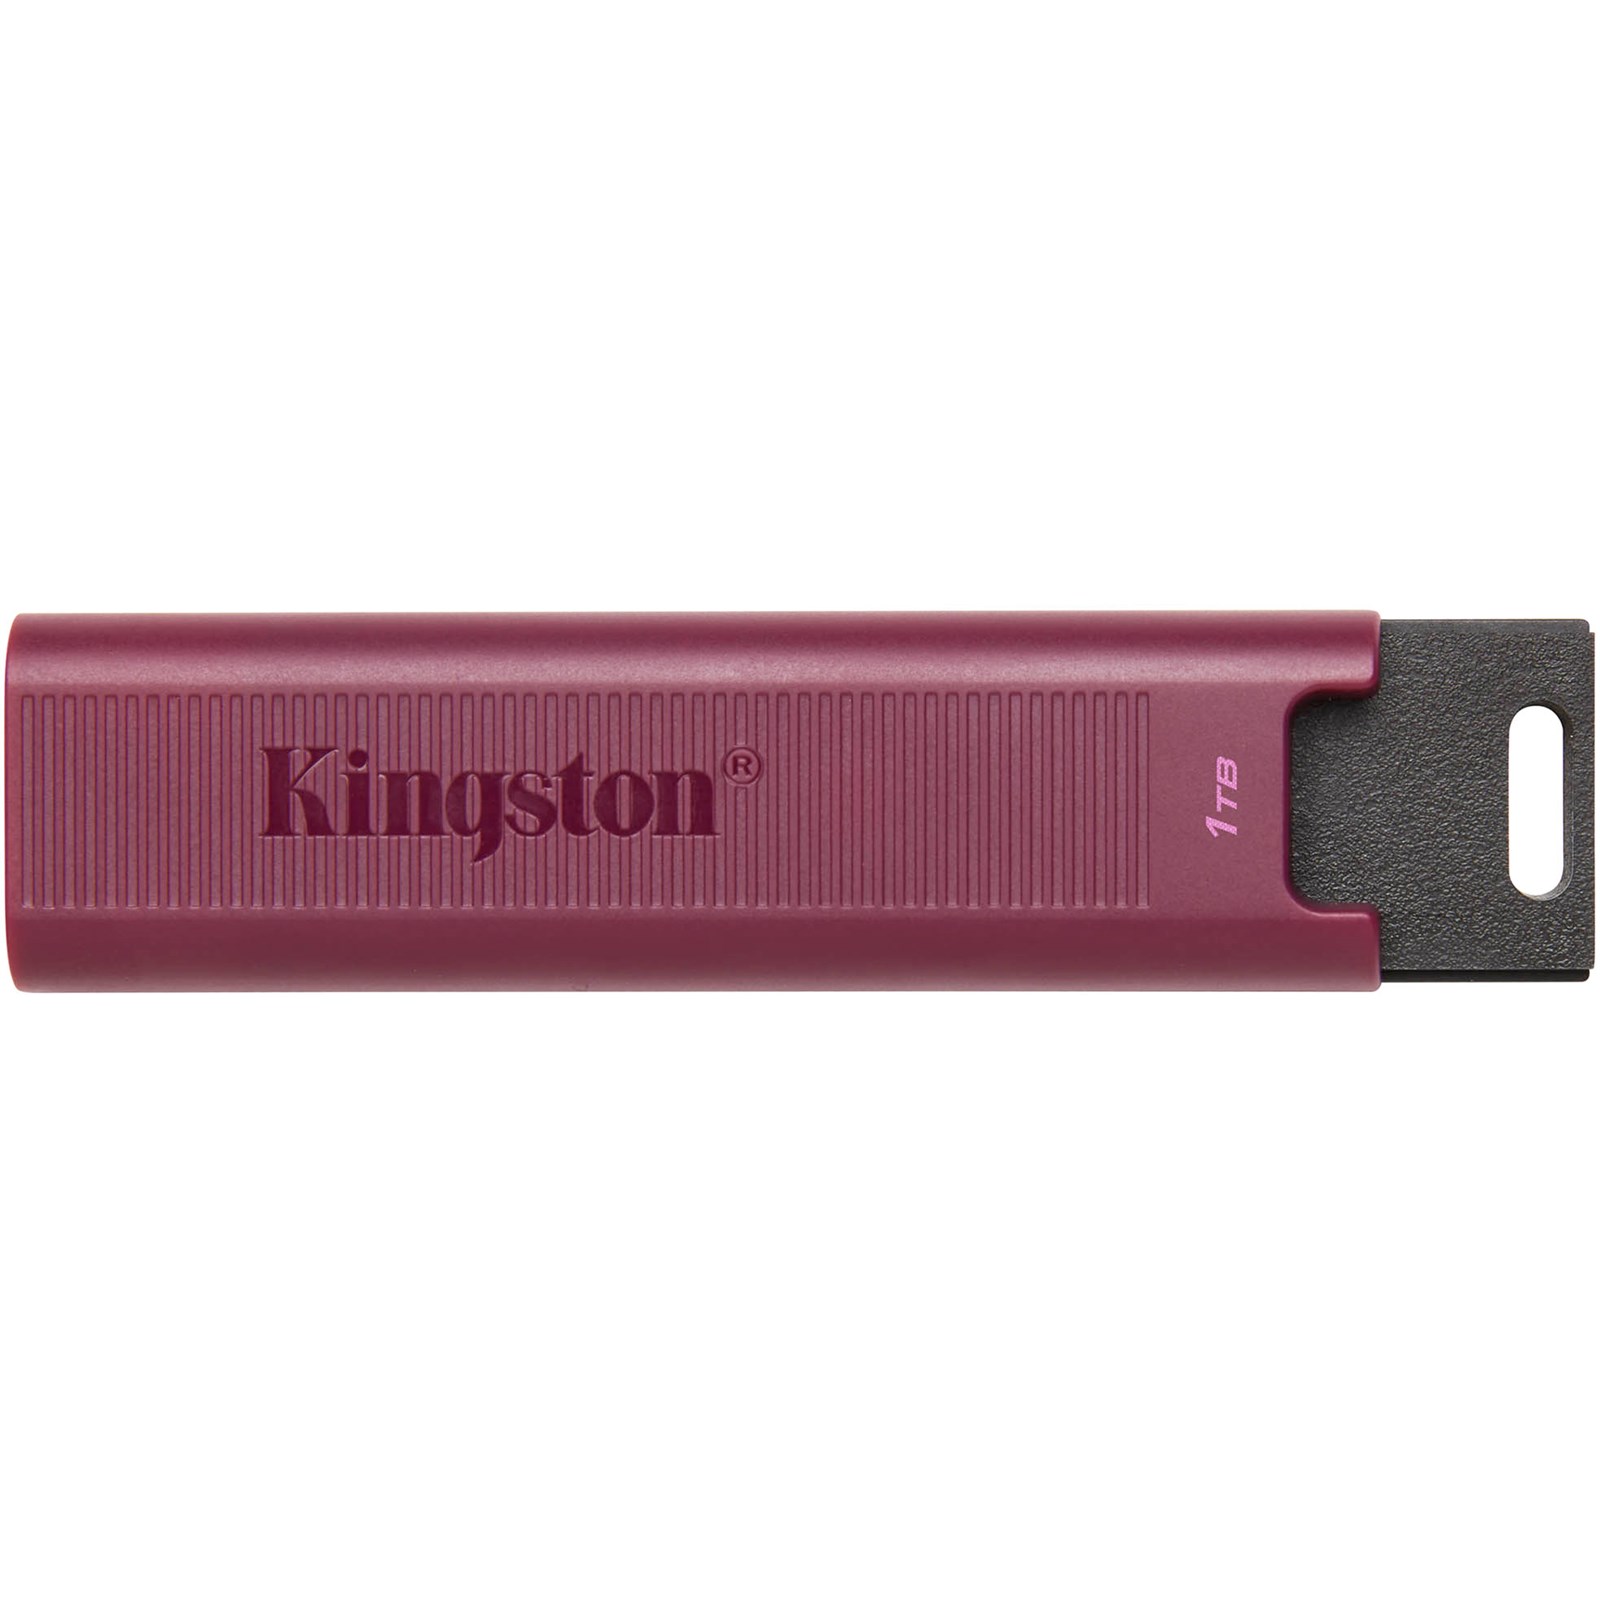 Kingston DataTraveler Max 1TB USB 3.1 Flash Stick Pen Memory Drive - Red